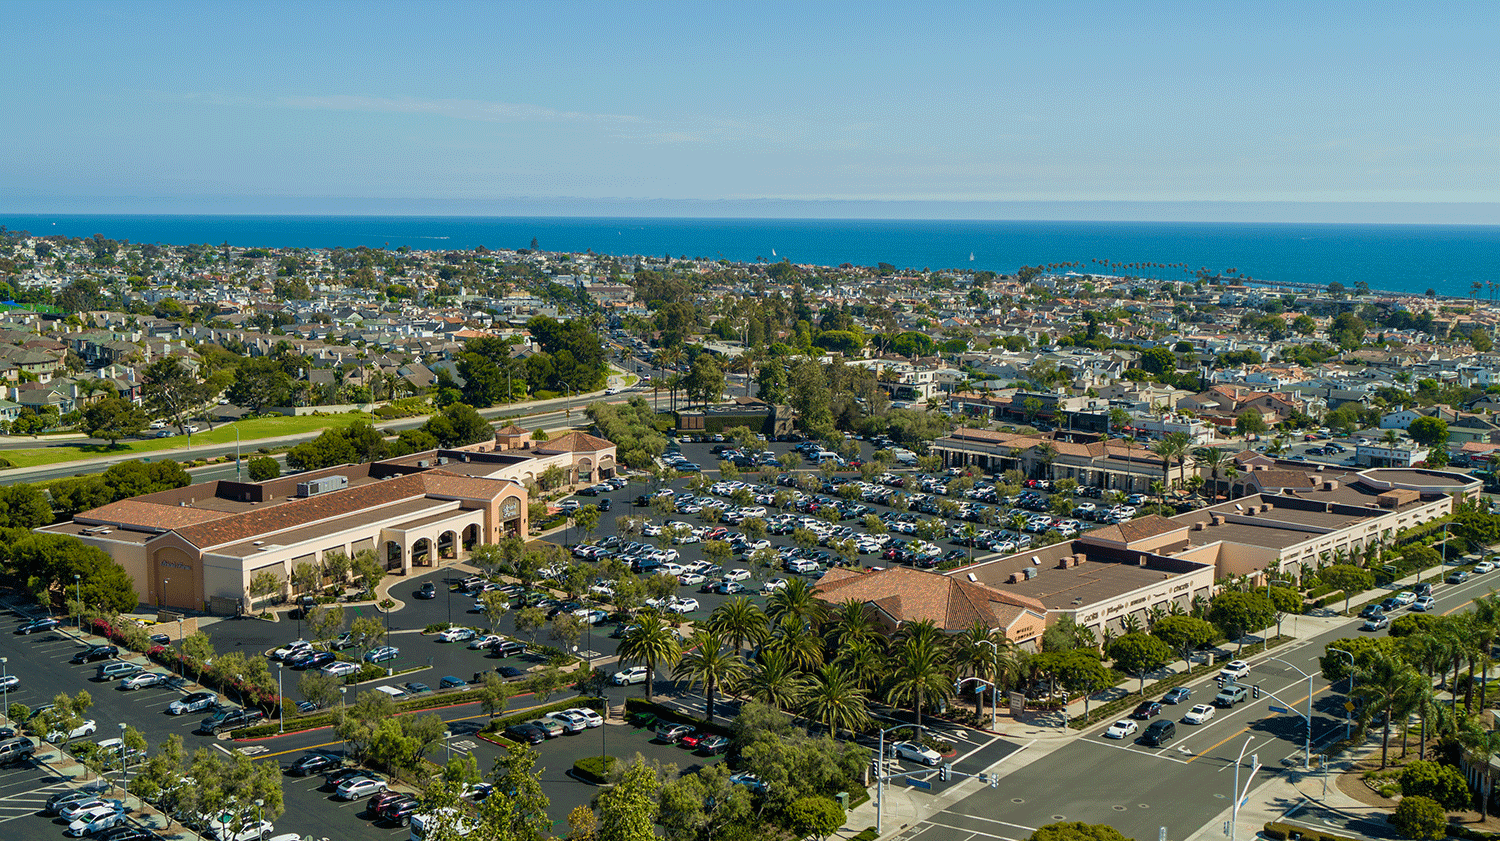  Ariel view of Corona del Mar Plaza